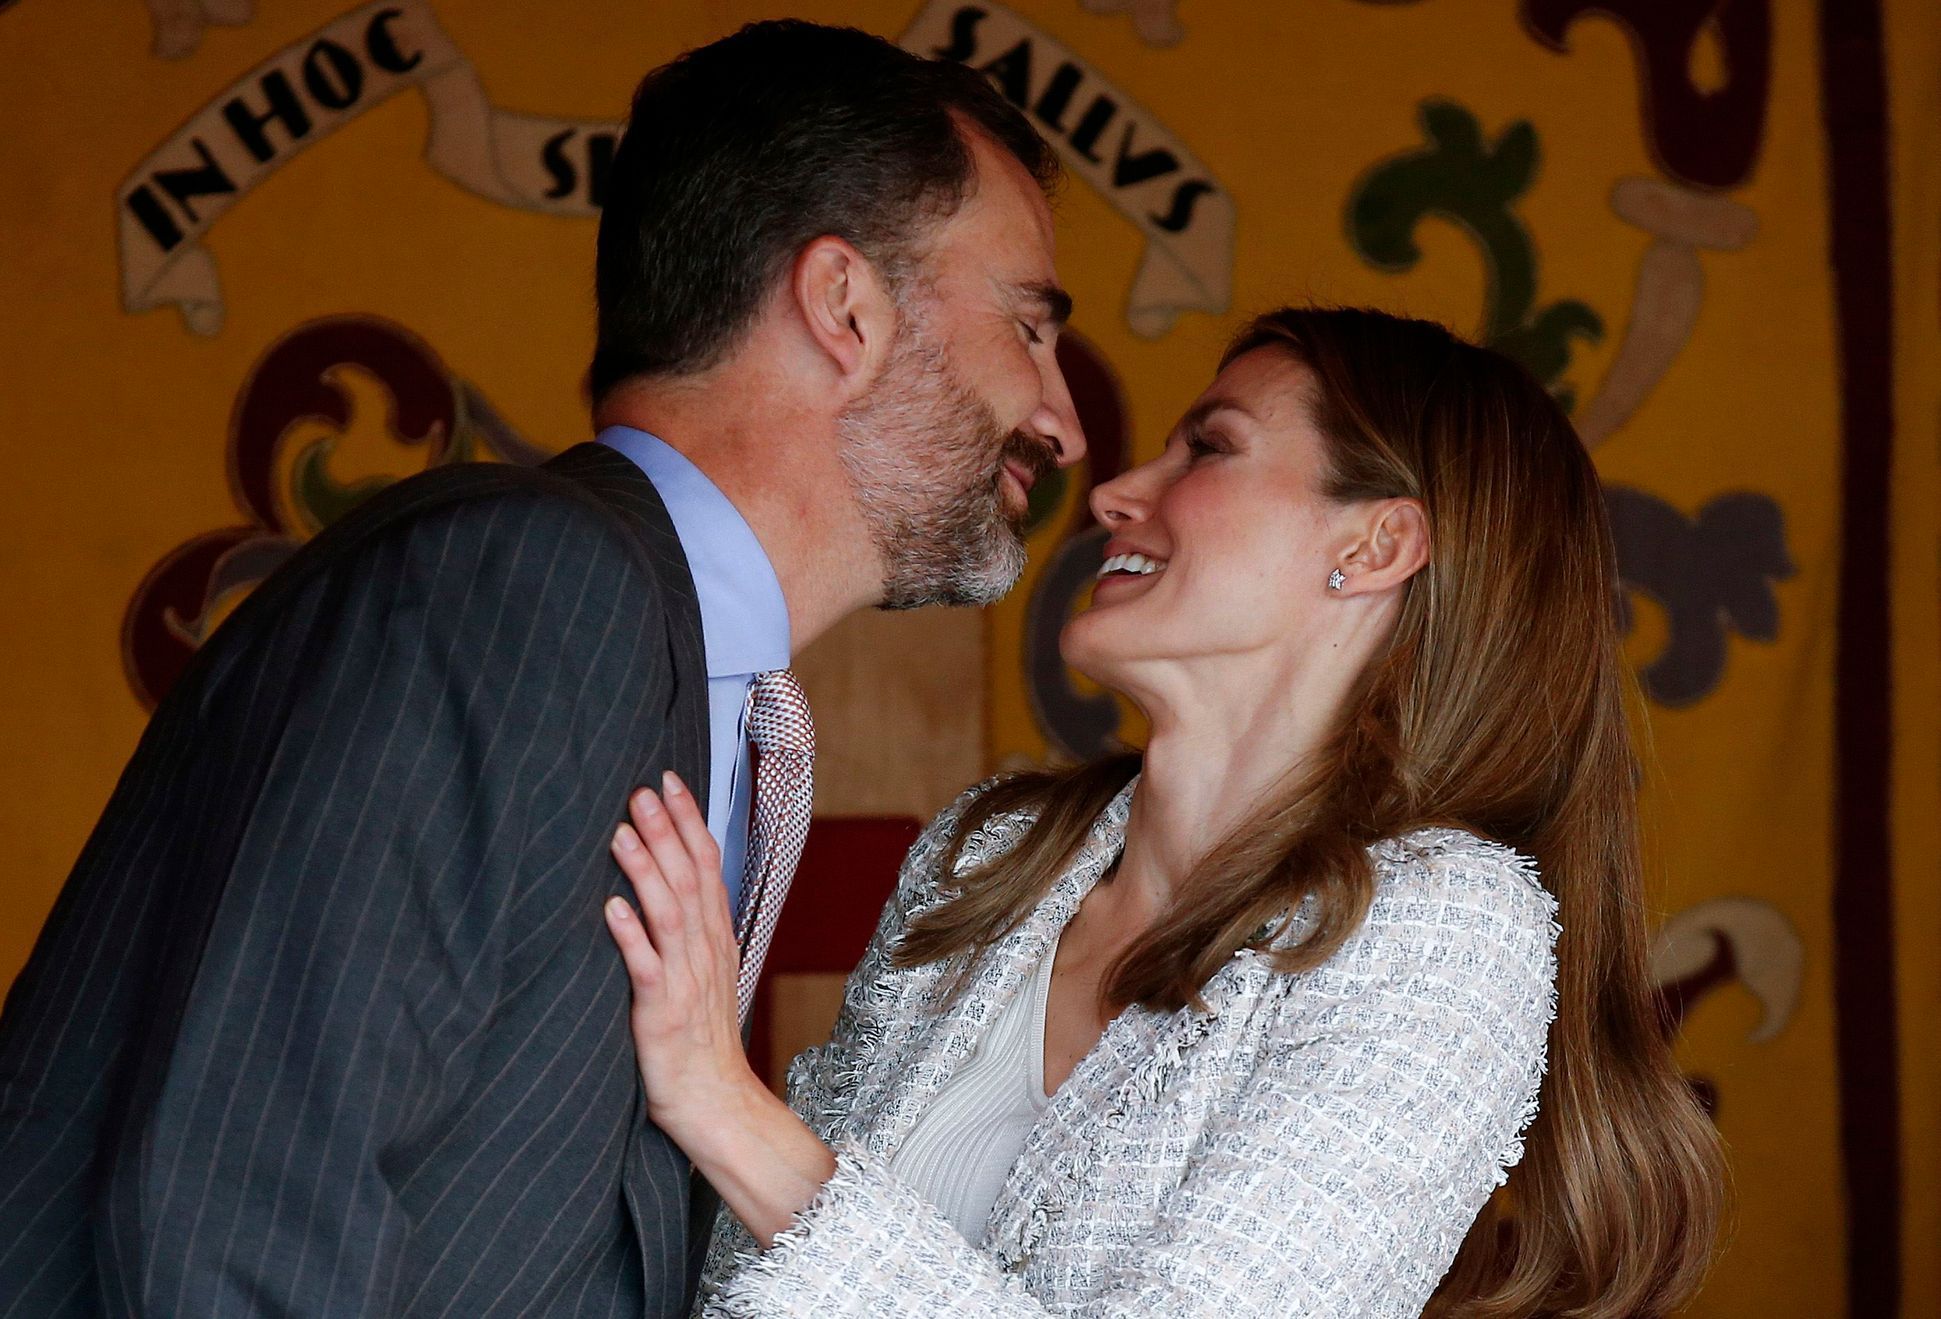 španělský princ Felipe a princezna Letizia